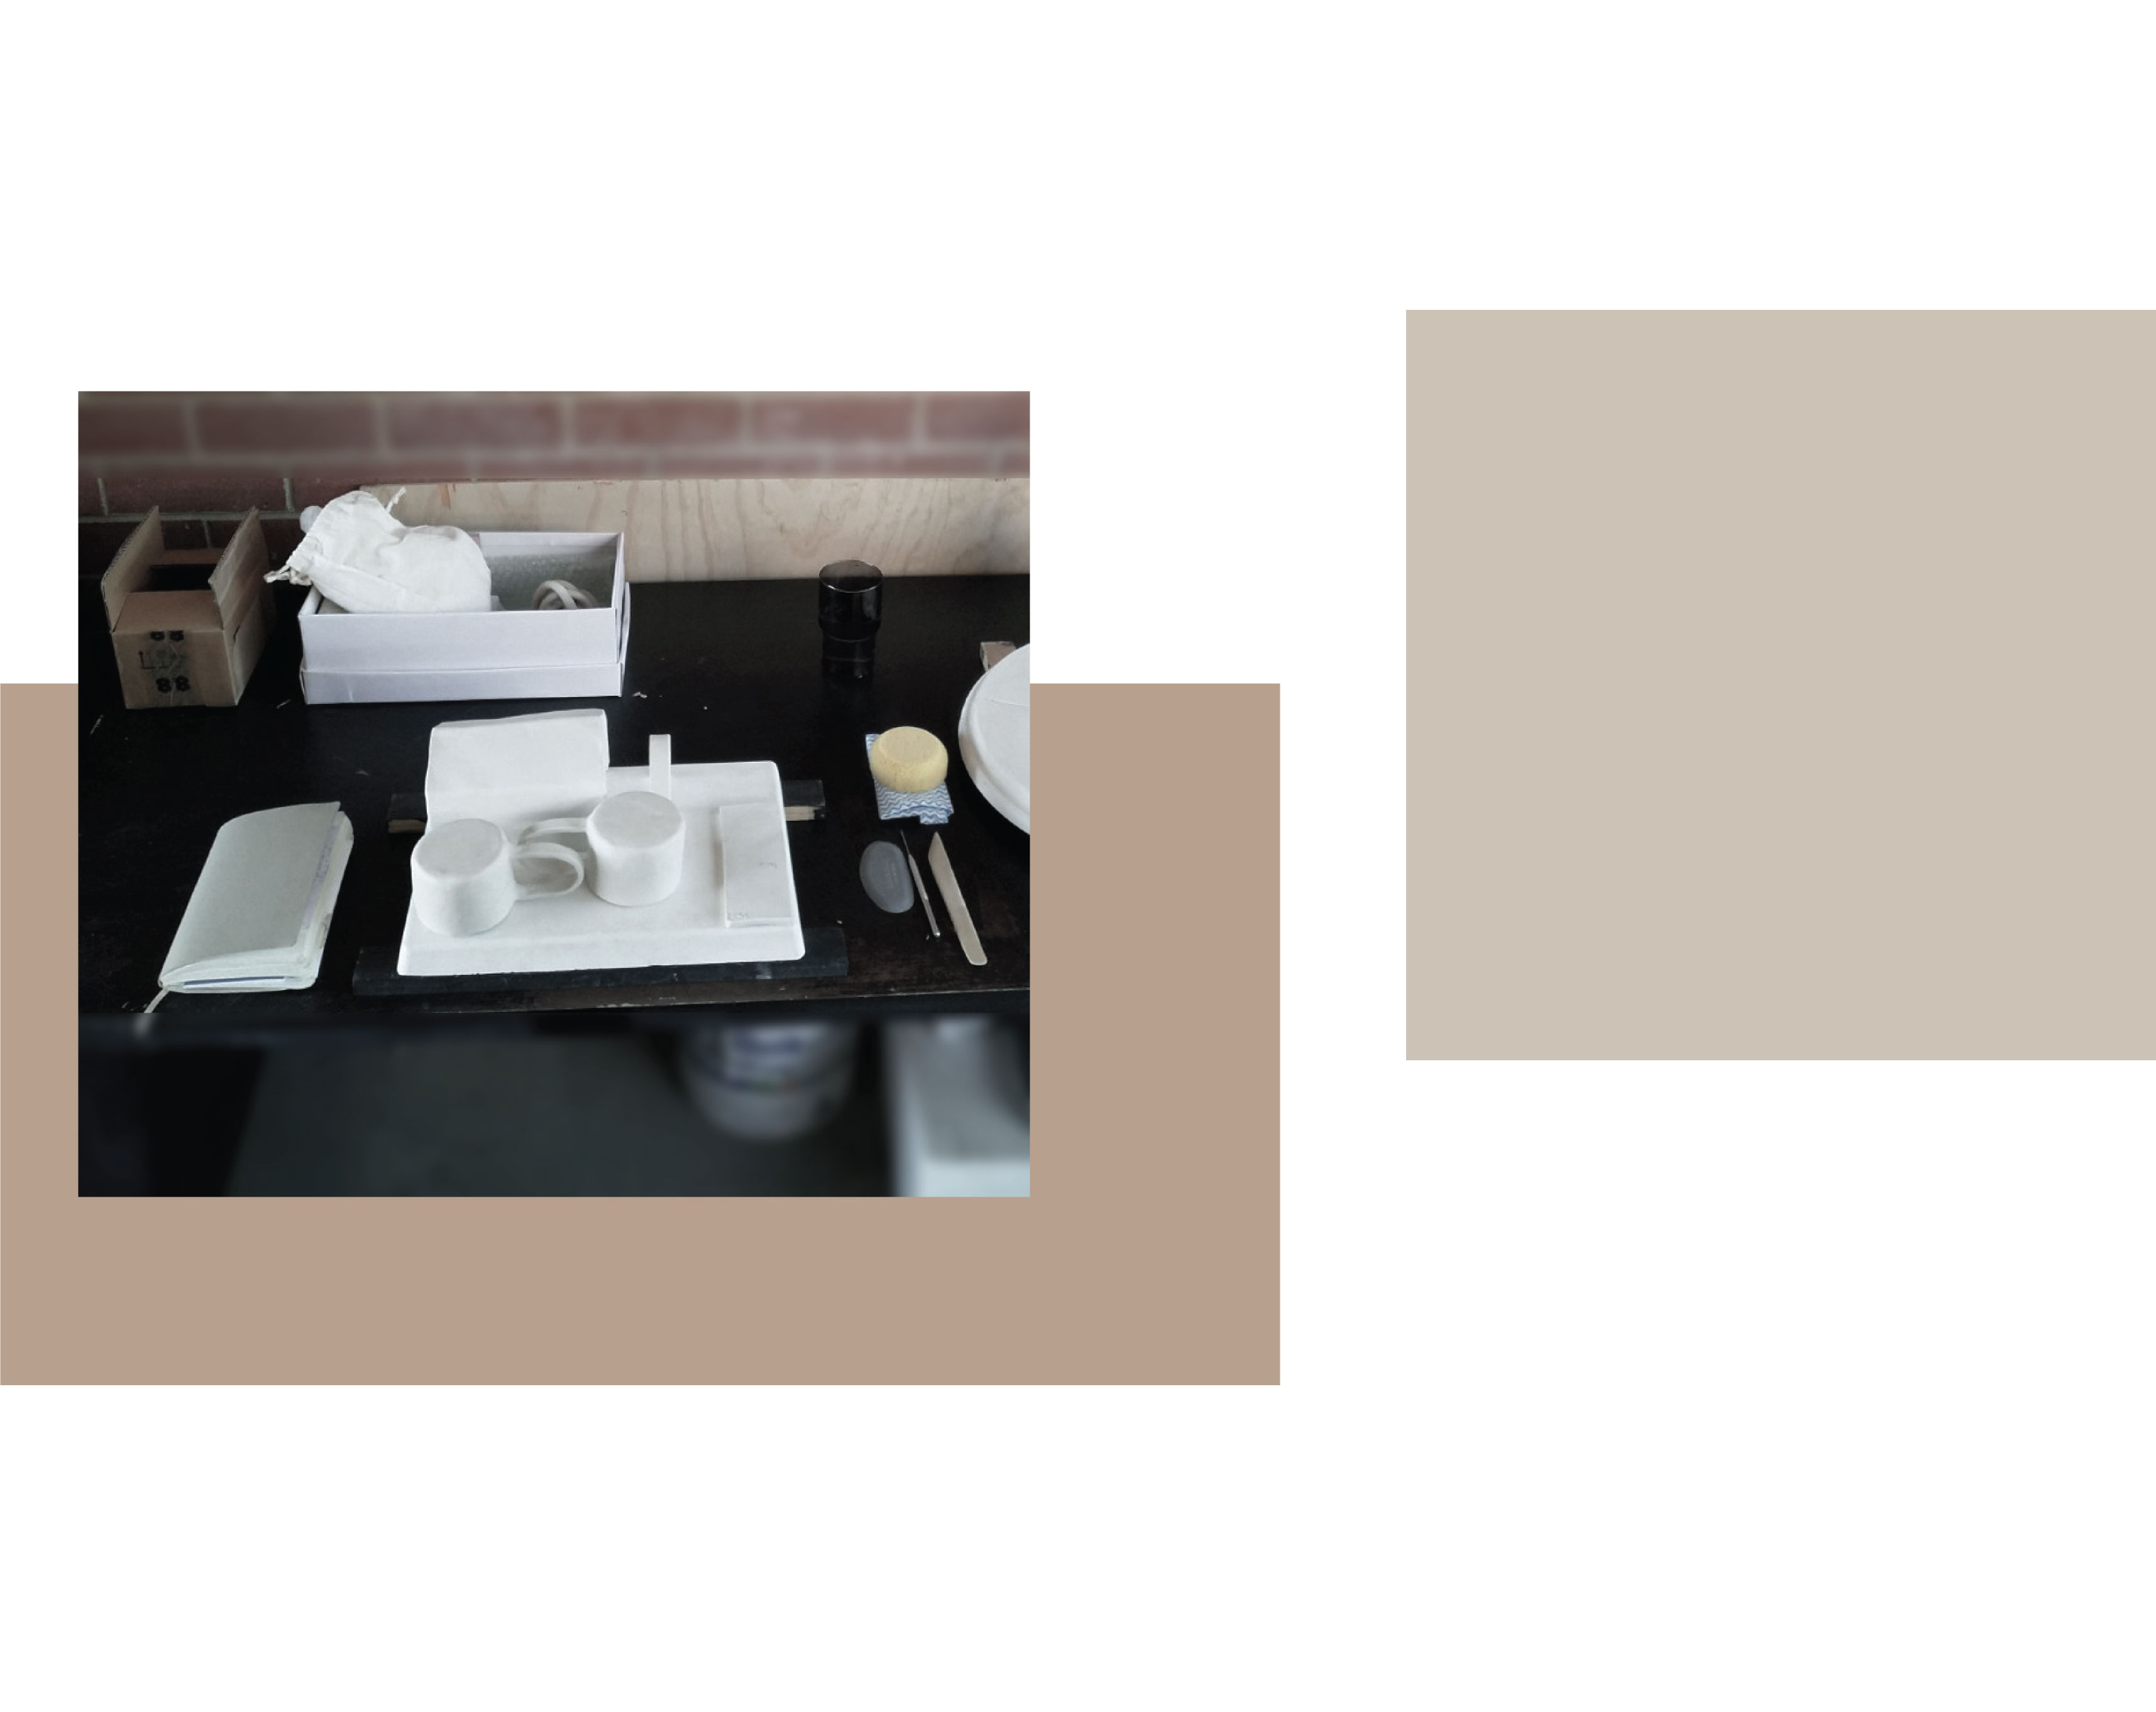 biurko studyjne z pałąkiem gipsowym, szkicownikiem, dwoma suszącymi się glinianymi kubkami.